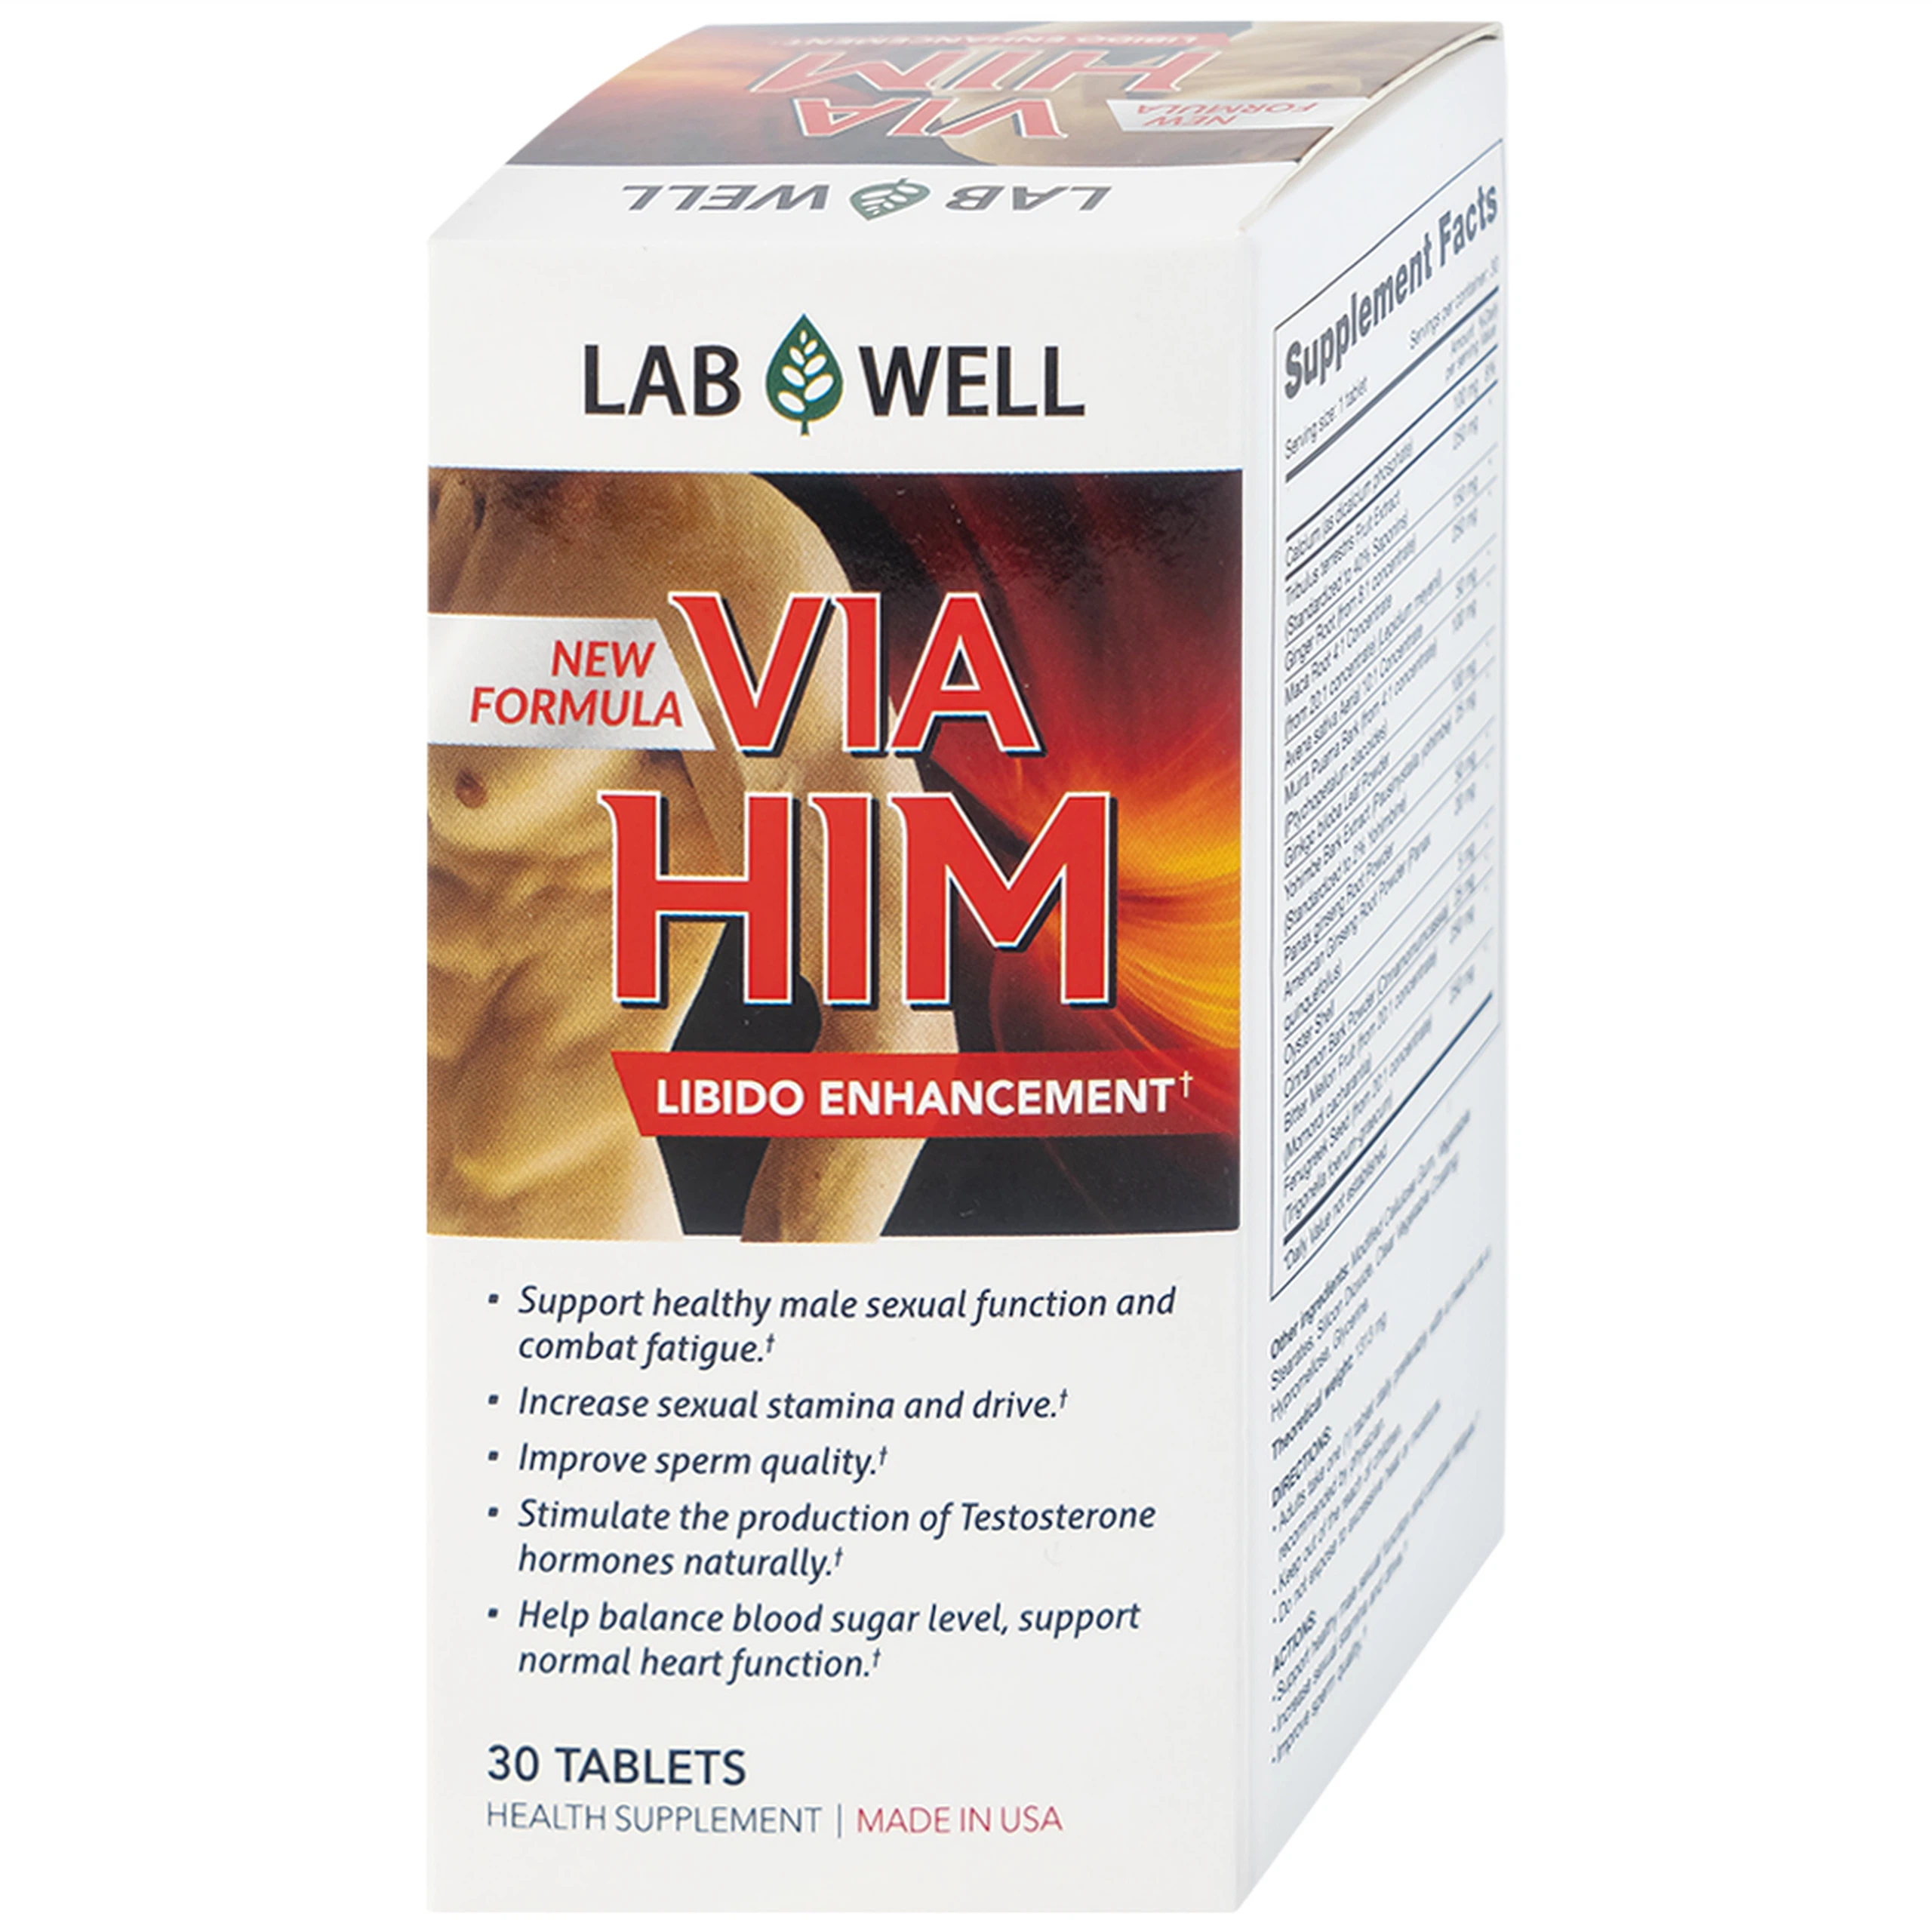 Viên uống Via Him Lab Well bồi bổ sức khỏe, tăng cường sinh lực và khả năng sinh lý ở nam giới (30 viên)